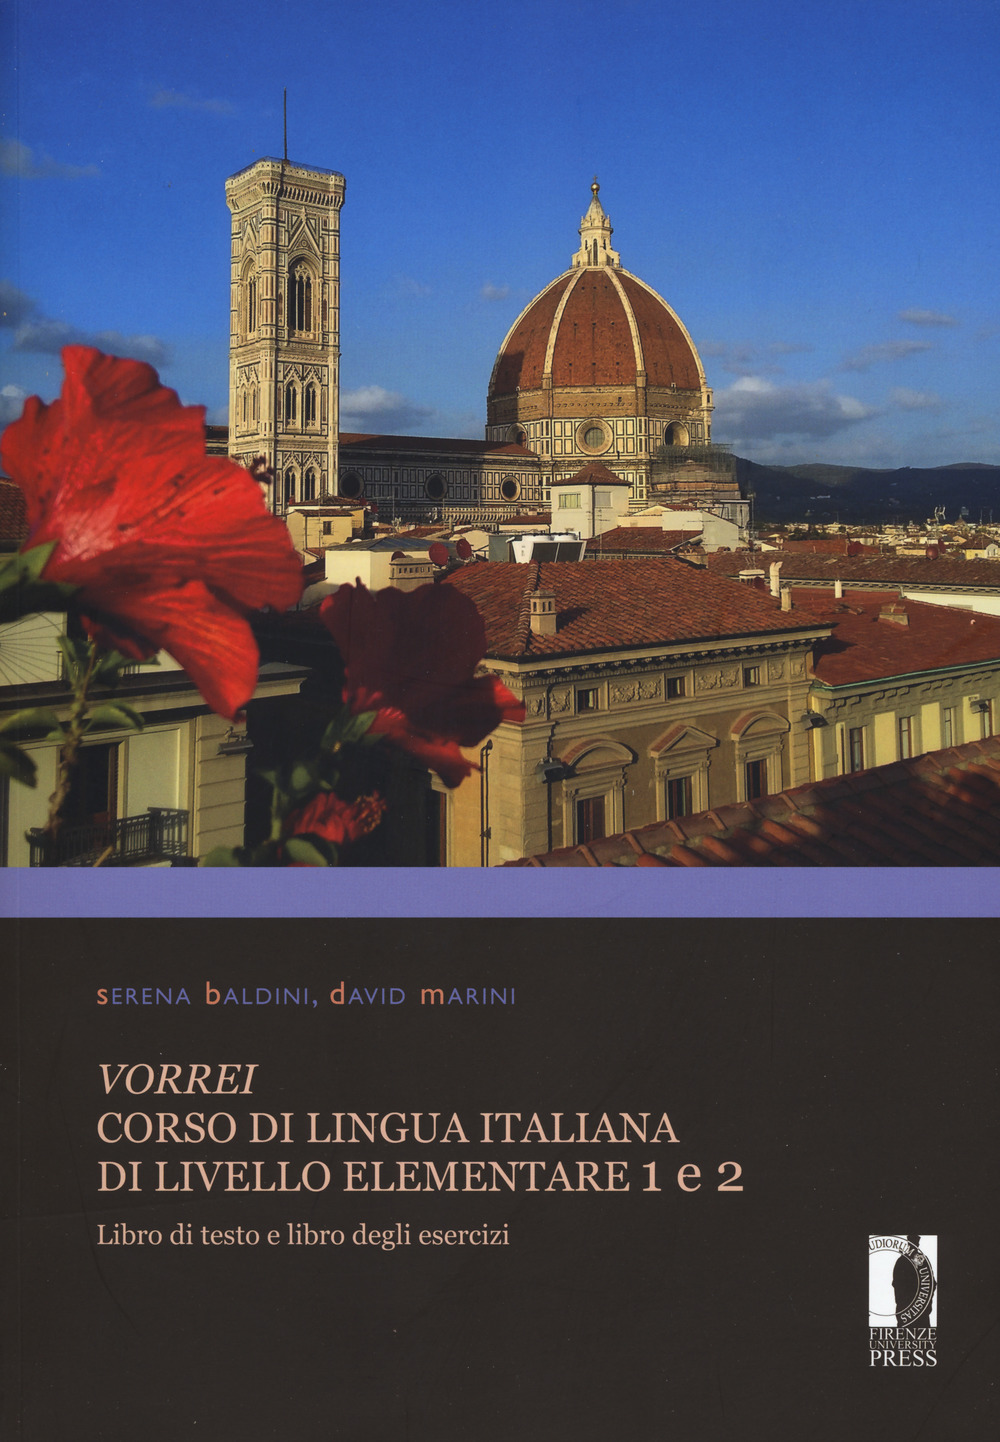 Vorrei. Corso di lingua italiana di livello elementare. Vol. 1-2: Libro di testo e libro degli esercizi